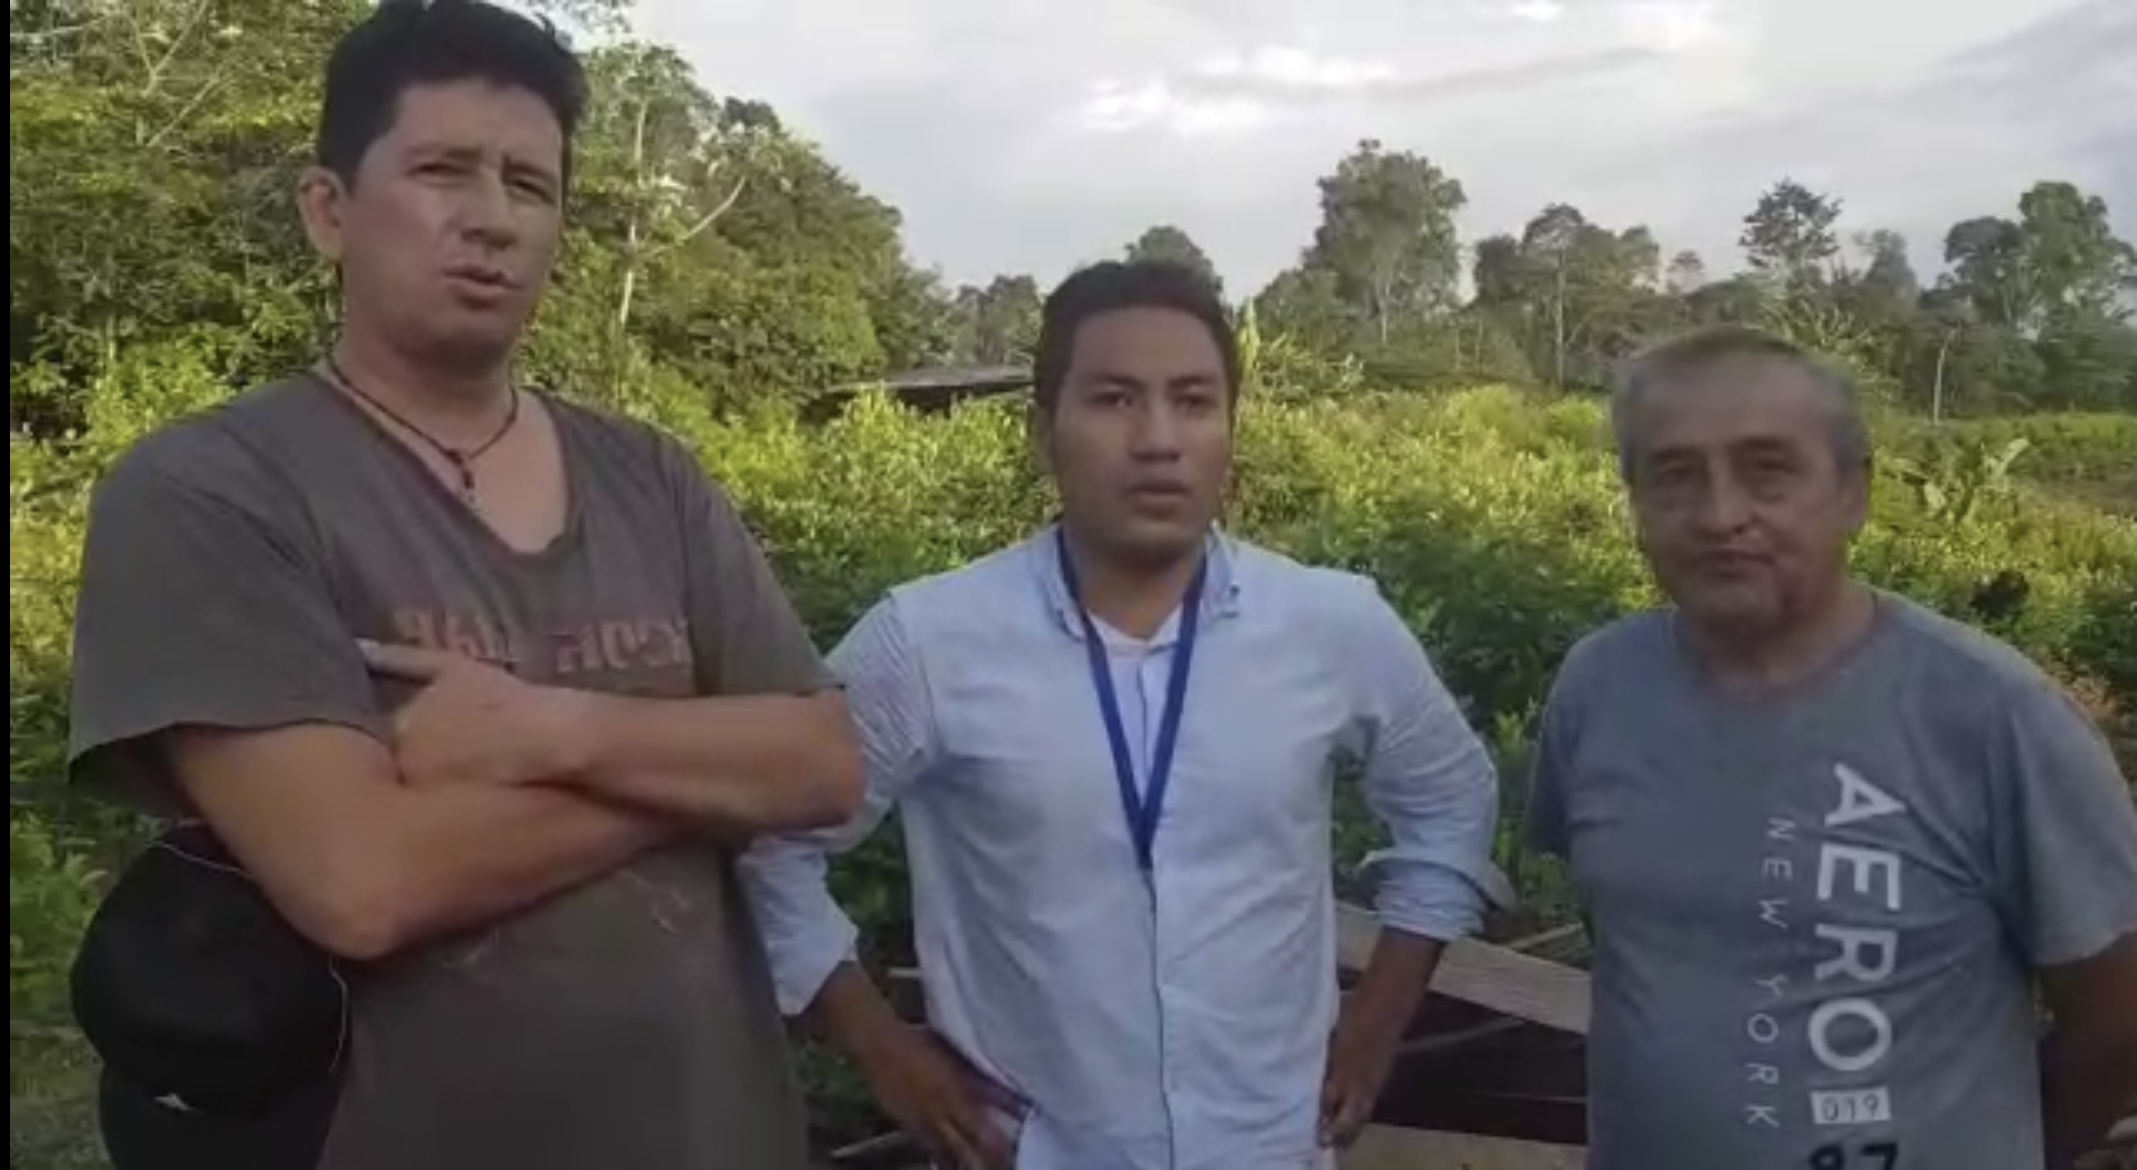 EQUIPO. Paúl Rivas, Efraín Segarra y Javier Ortega, el día que fueron secuestrados el 26 de marzo de 2018 en Mataje, Esmeraldas. (Captura de vídeo)